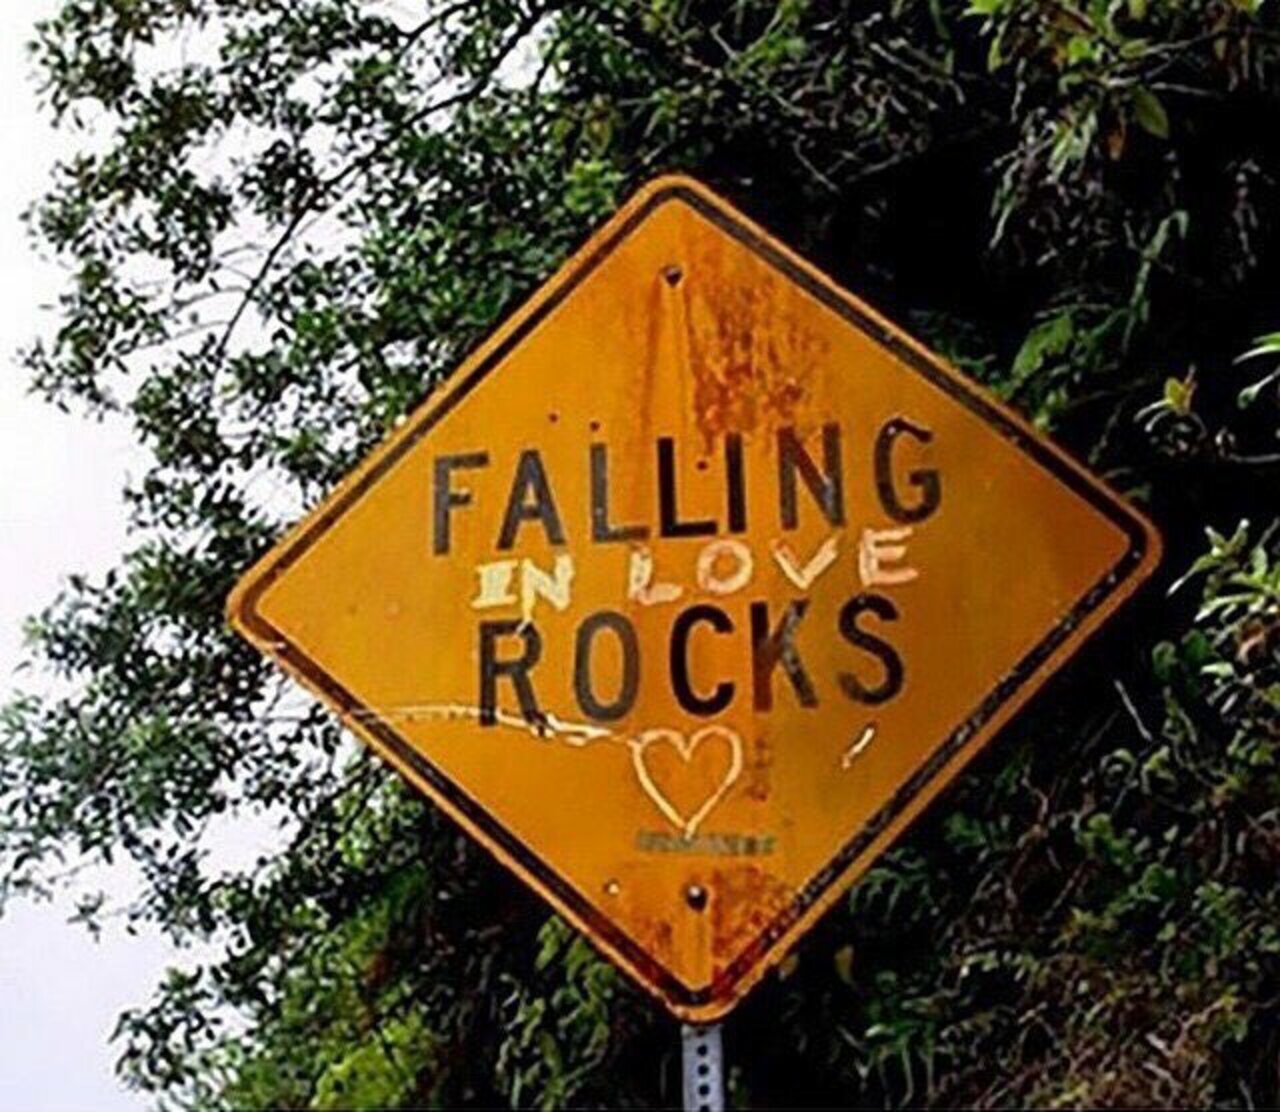 Falling in #love #rocks! #StreetArt #urbanart https://t.co/X6tN5o1UxF